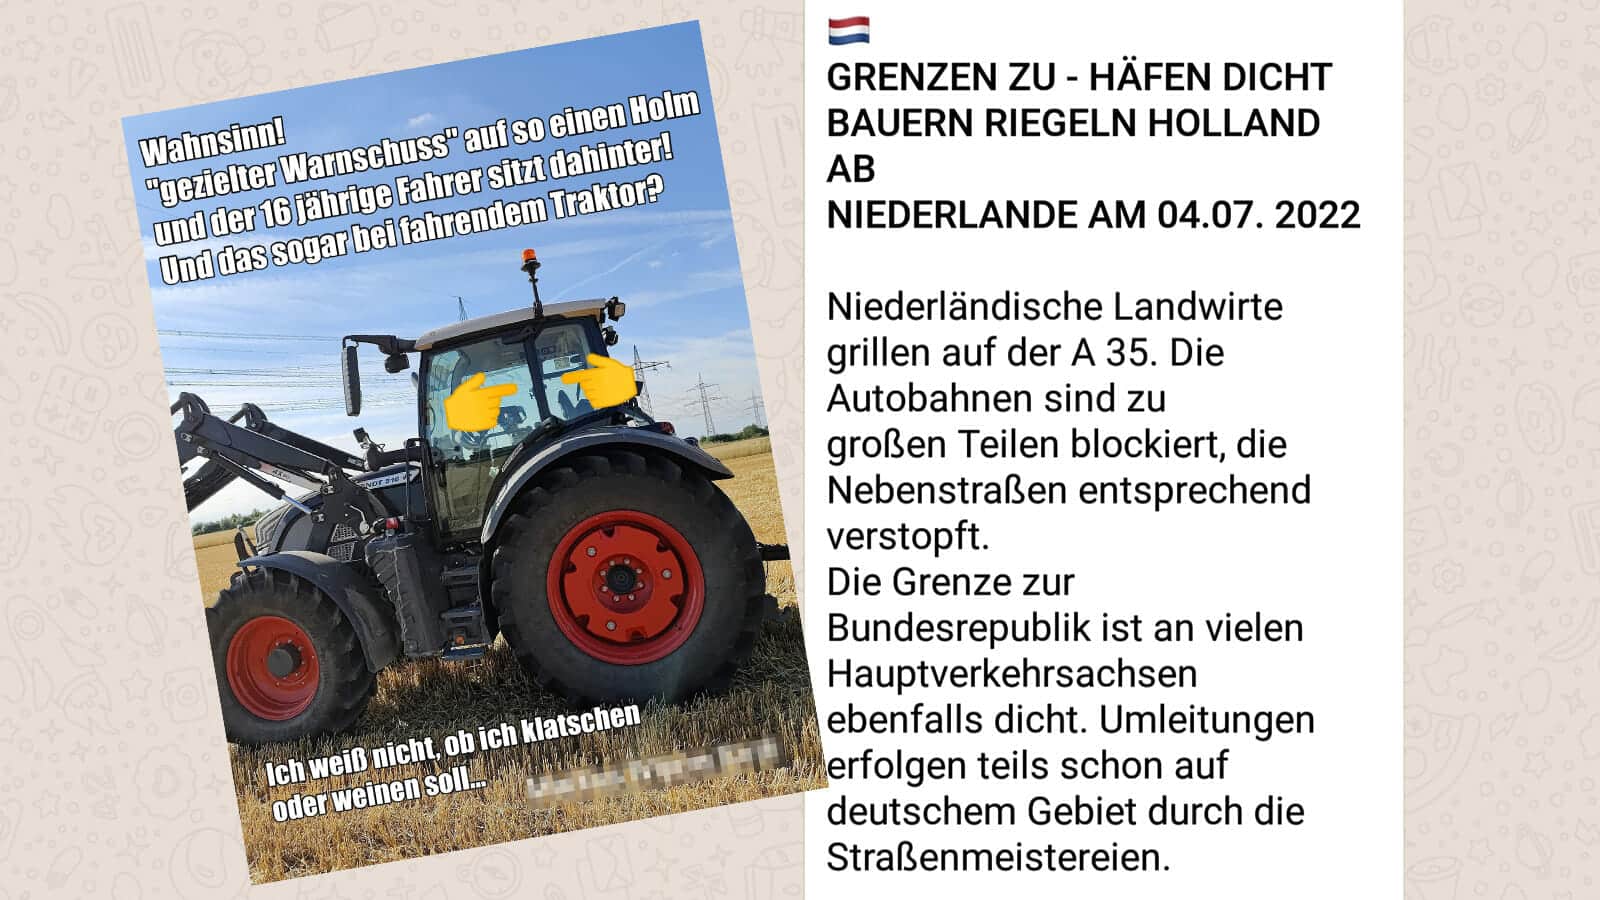 Bauernproteste in den Niederlanden: Wahrheiten, Halbwahrheiten und Falschbehauptungen